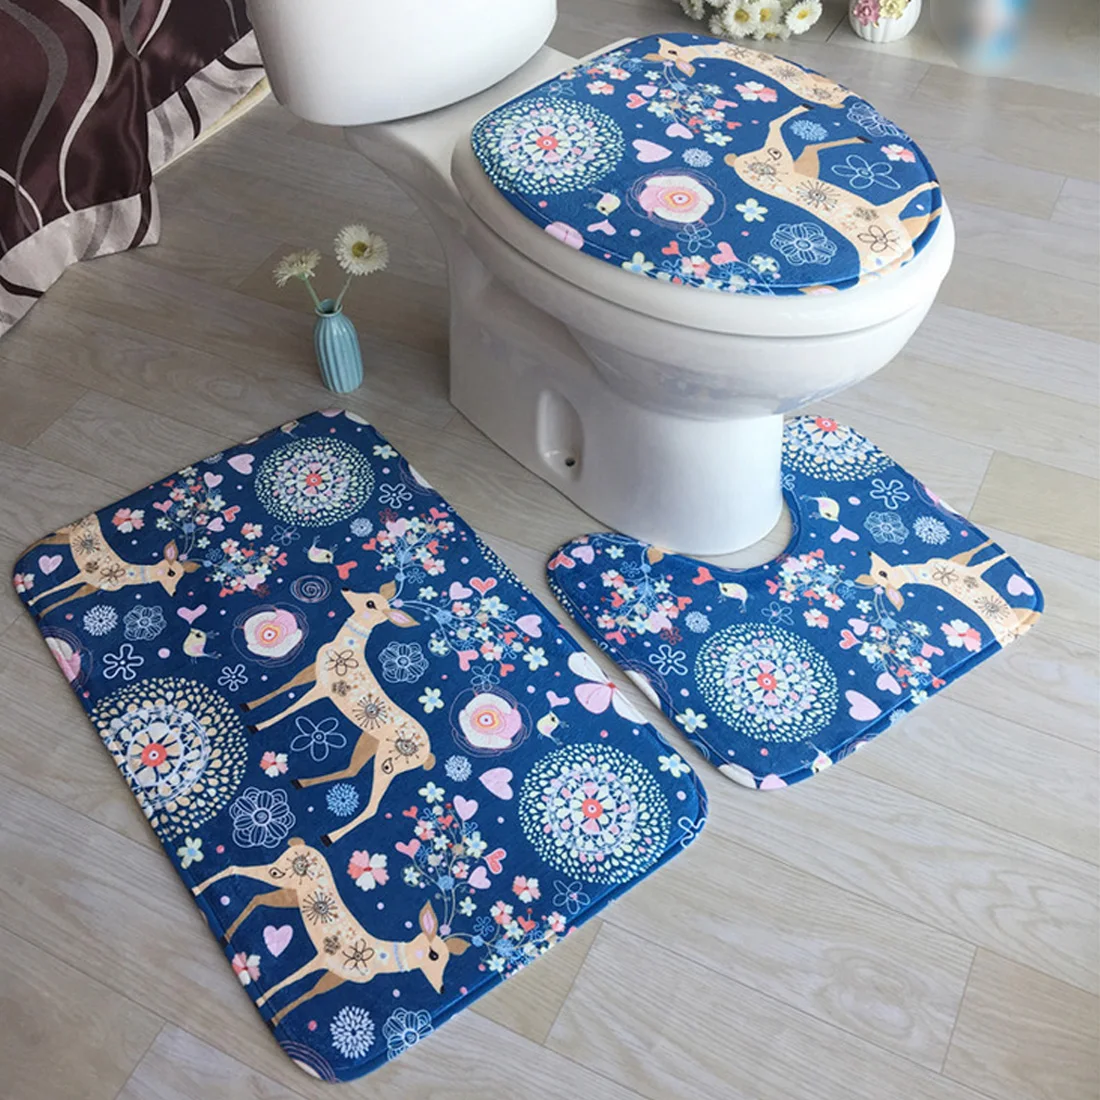 Коврик фланелевый набор с принтом для ванной коврик для ванной впитывающий Противоскользящий базовый Ковер Крышка для унитаза крышка для туалета Прачечная - Цвет: 20